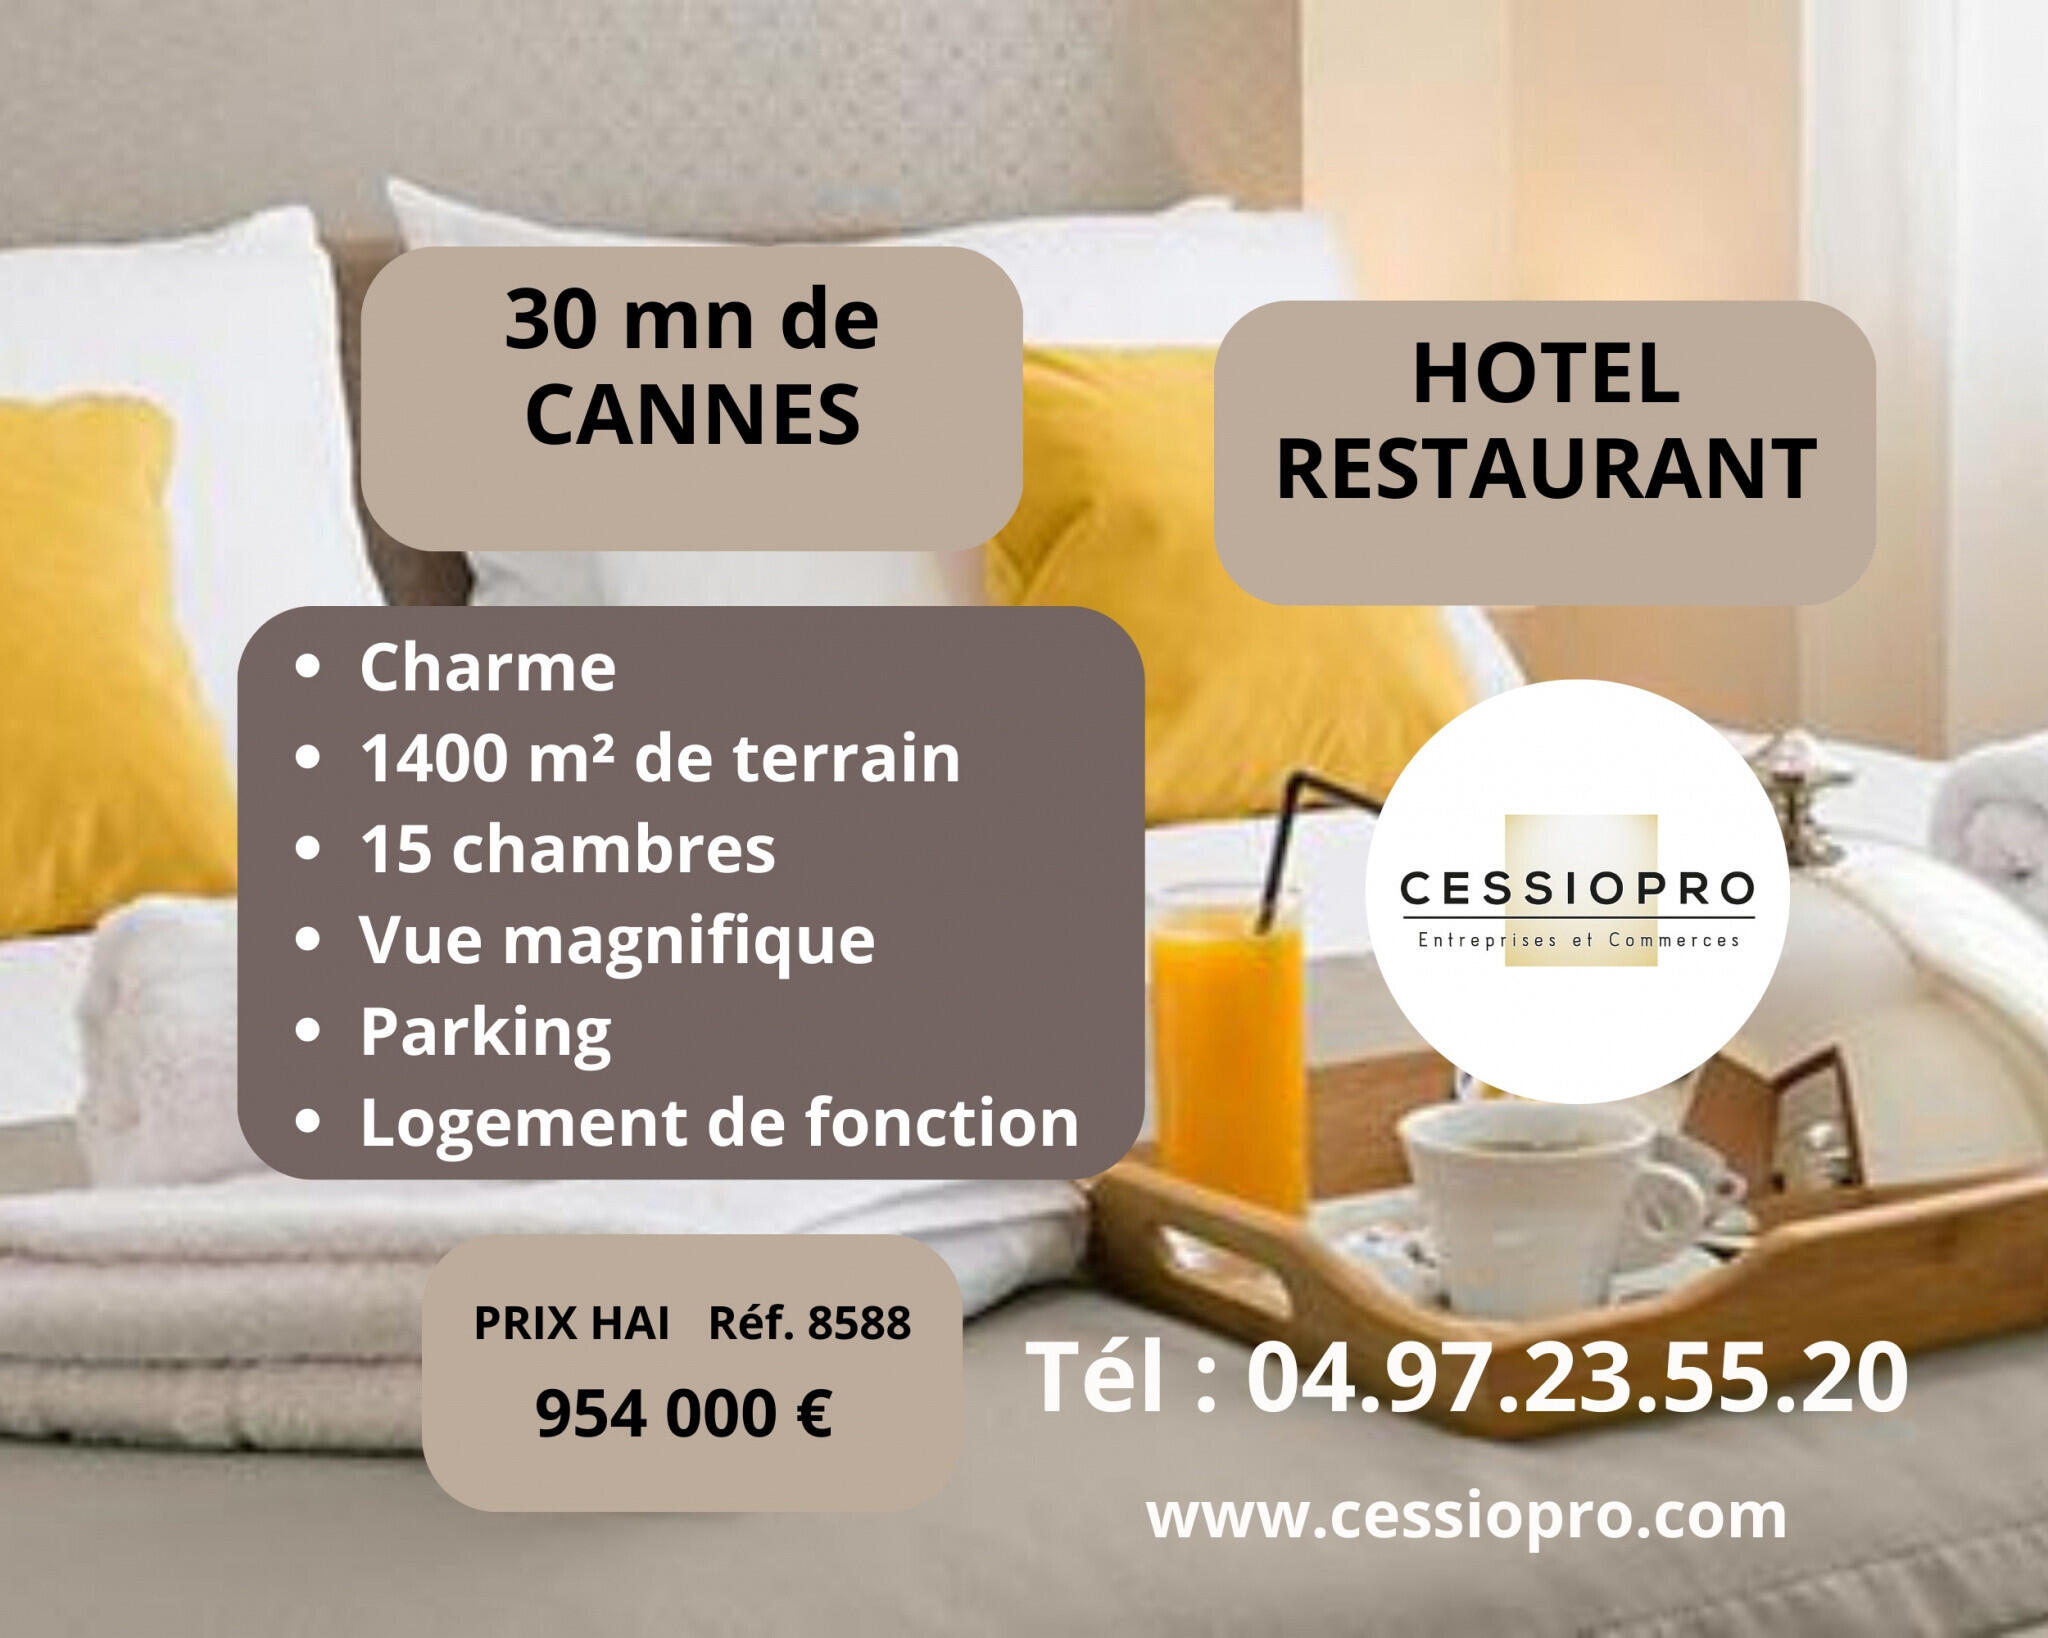 Vente hôtel restaurant de charme à 30 mn de Cannes